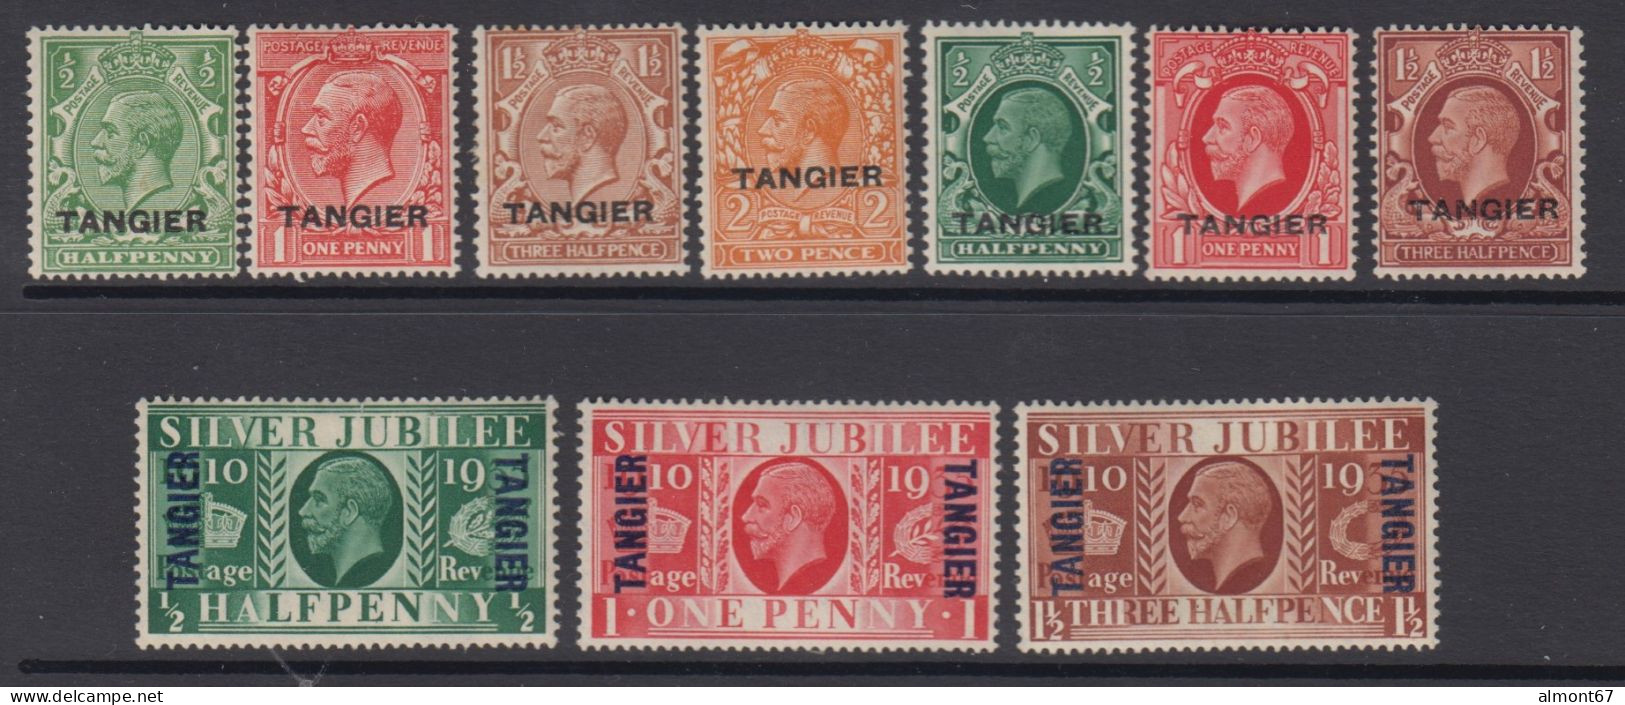 Maroc - Bureaux Anglais - Tanger N° 1 à 10 * - Morocco Agencies / Tangier (...-1958)